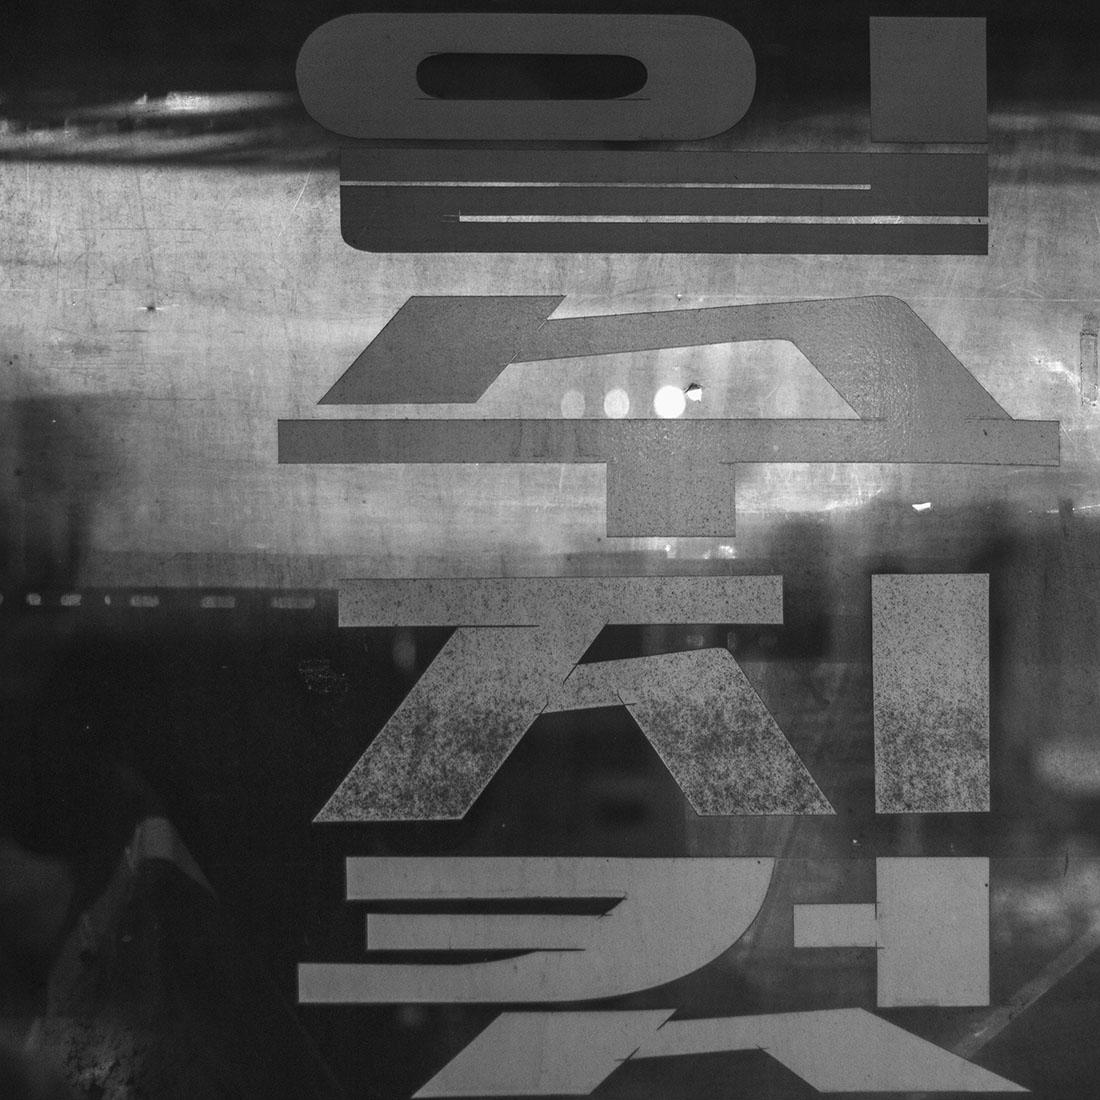 Caractères hangul, typographie, nuit, Séoul